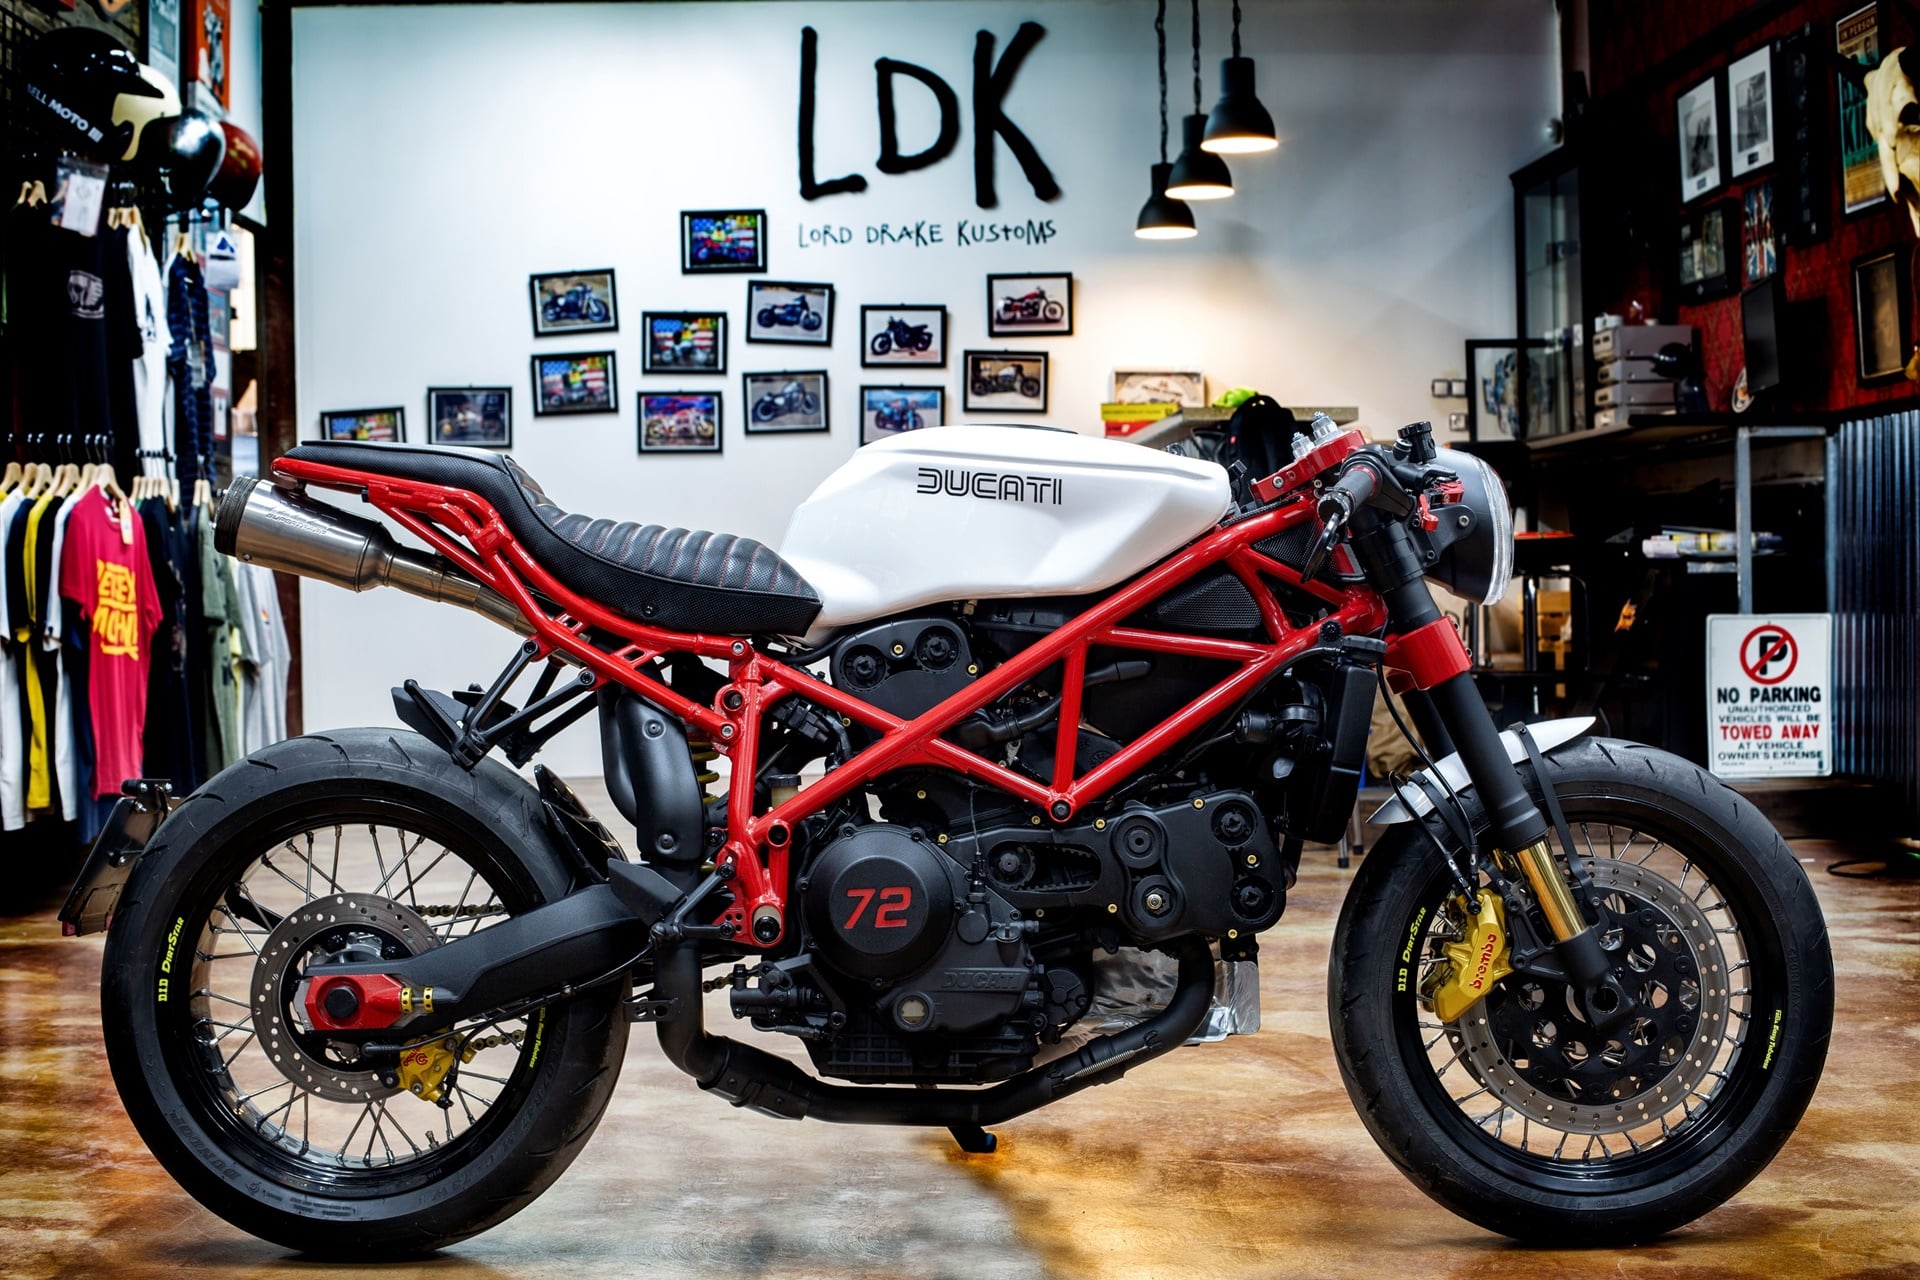 Ducati 999 Neoracer: La deportiva convertida en Naked y con aires Cafe Racer